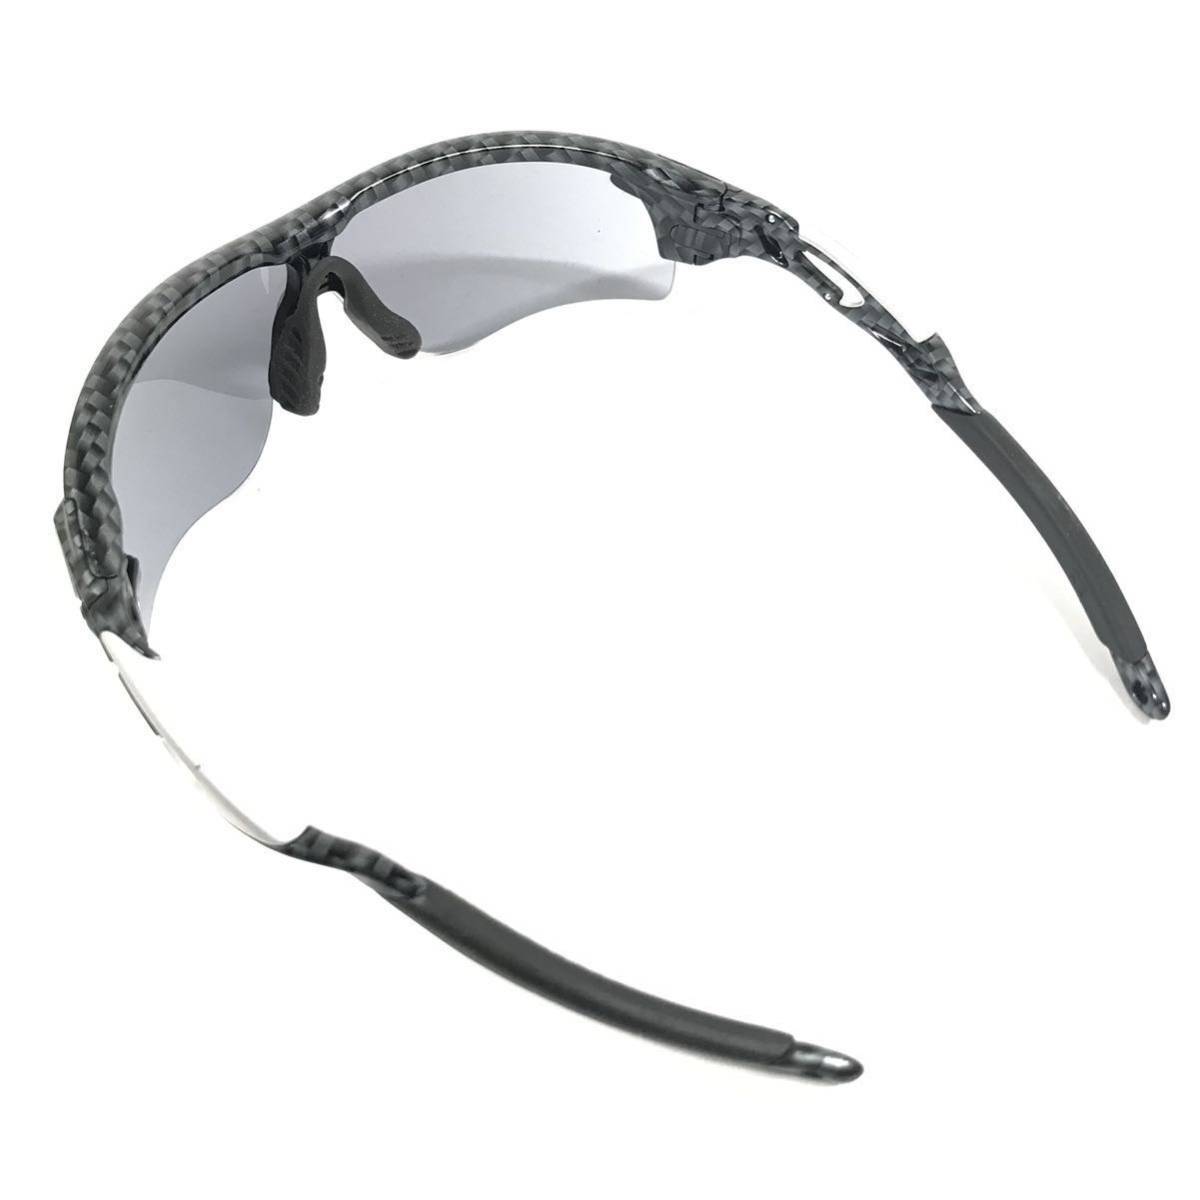 [ Oacley ] подлинный товар OAKLEY солнцезащитные очки RADAR LOCK радар блокировка OO9206-11 чёрный серый цвет серия мужской женский с футляром стоимость доставки 520 иен 